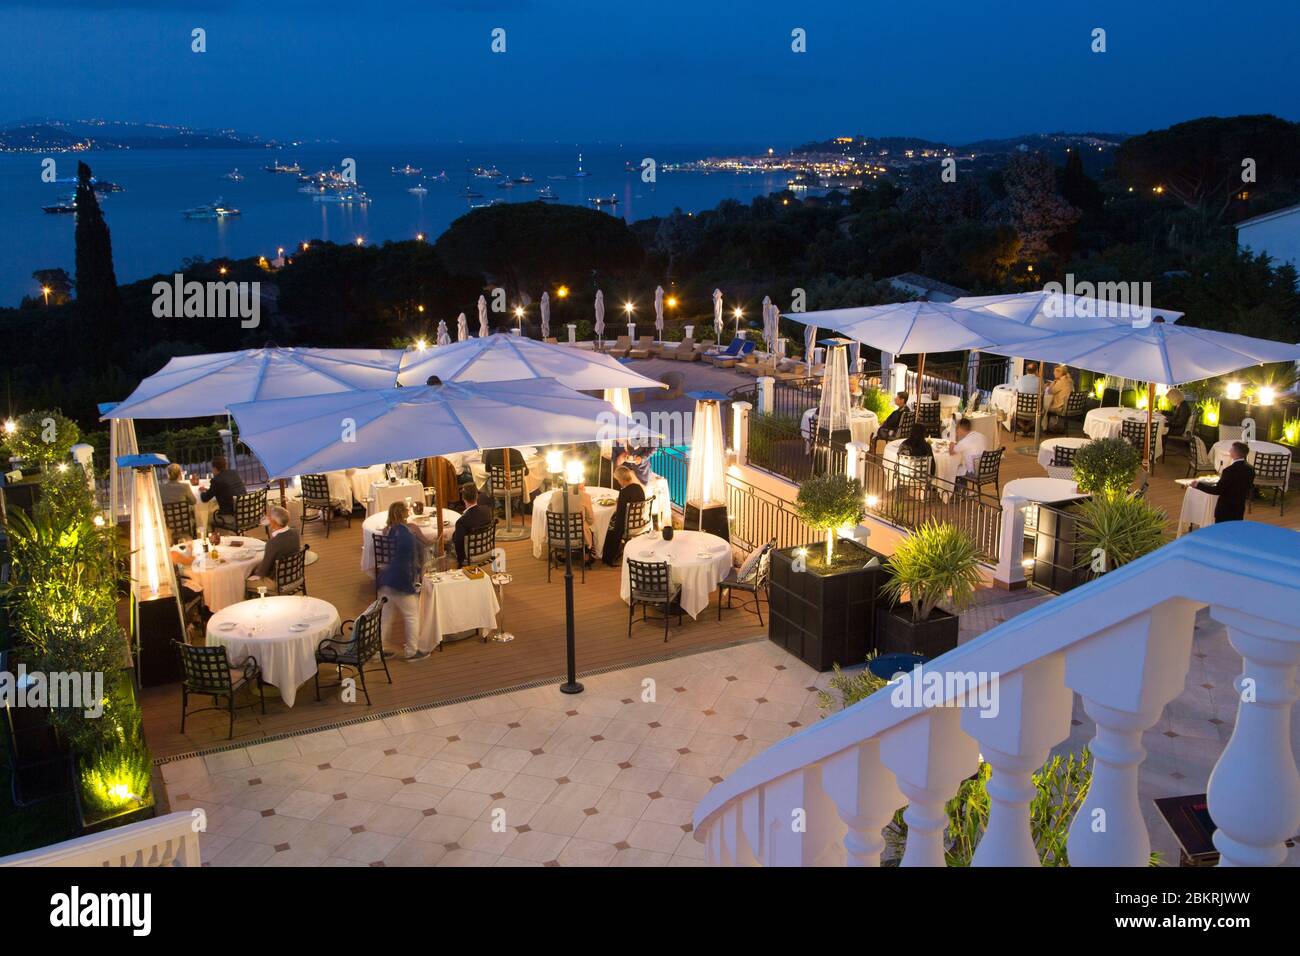 Frankreich, Var, Gassin, Presqu'ile de Saint Tropez, Hotel Villa Belrose, 5 Sterne der Althoff Gruppe mit Blick auf die Bucht von Saint Tropez, Sterne Restaurant, ein Michelin-Stern, Nacht Blick Stockfoto